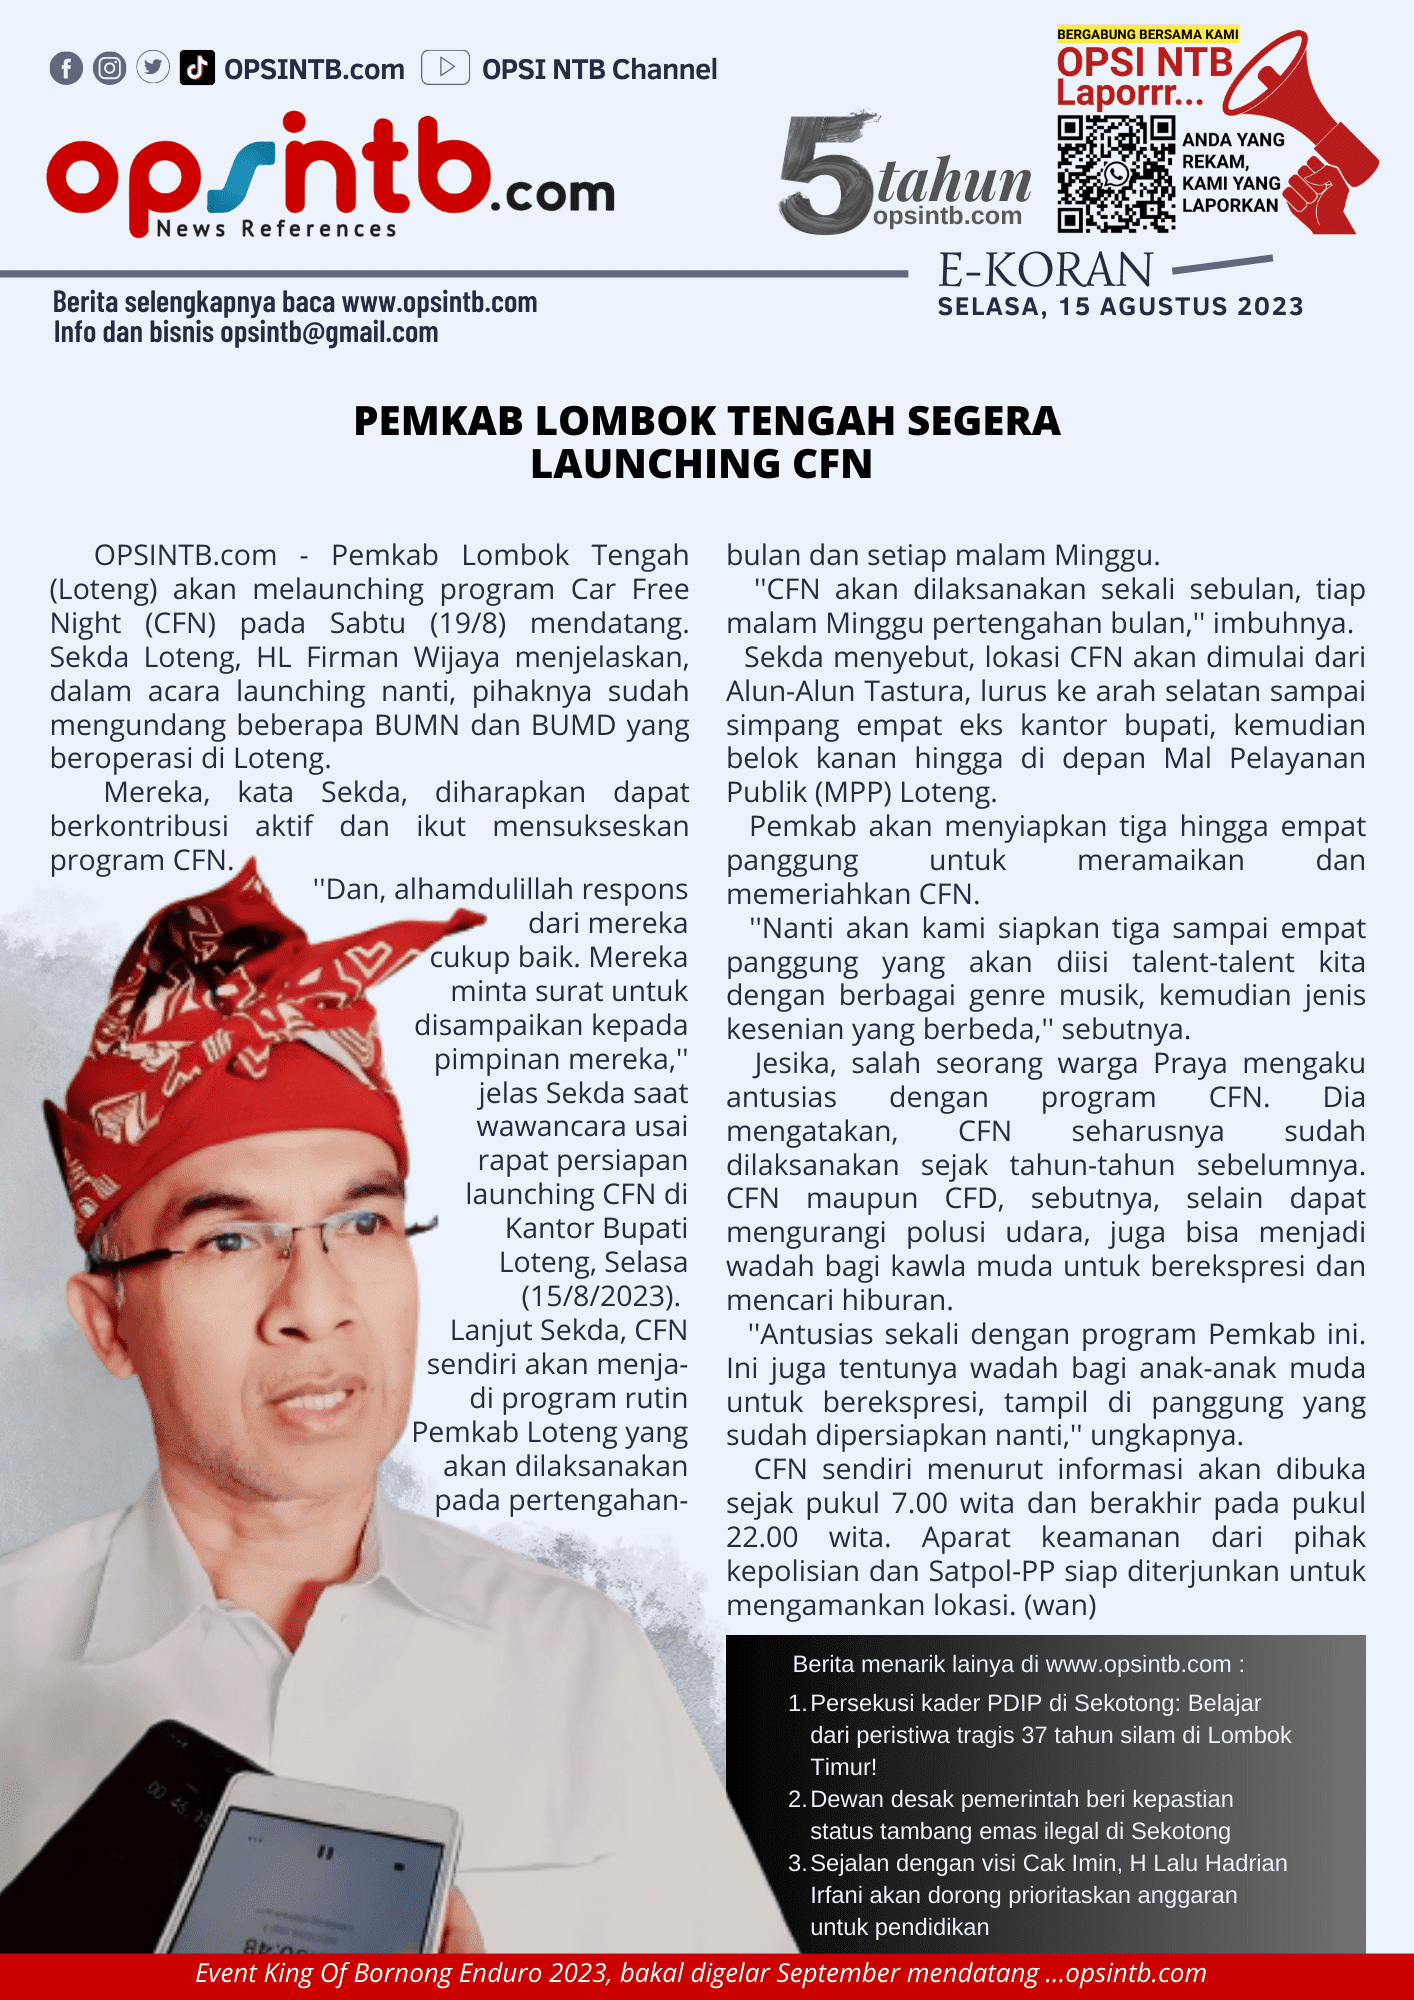 EKoran: Pemkab Loteng segera launching car free night